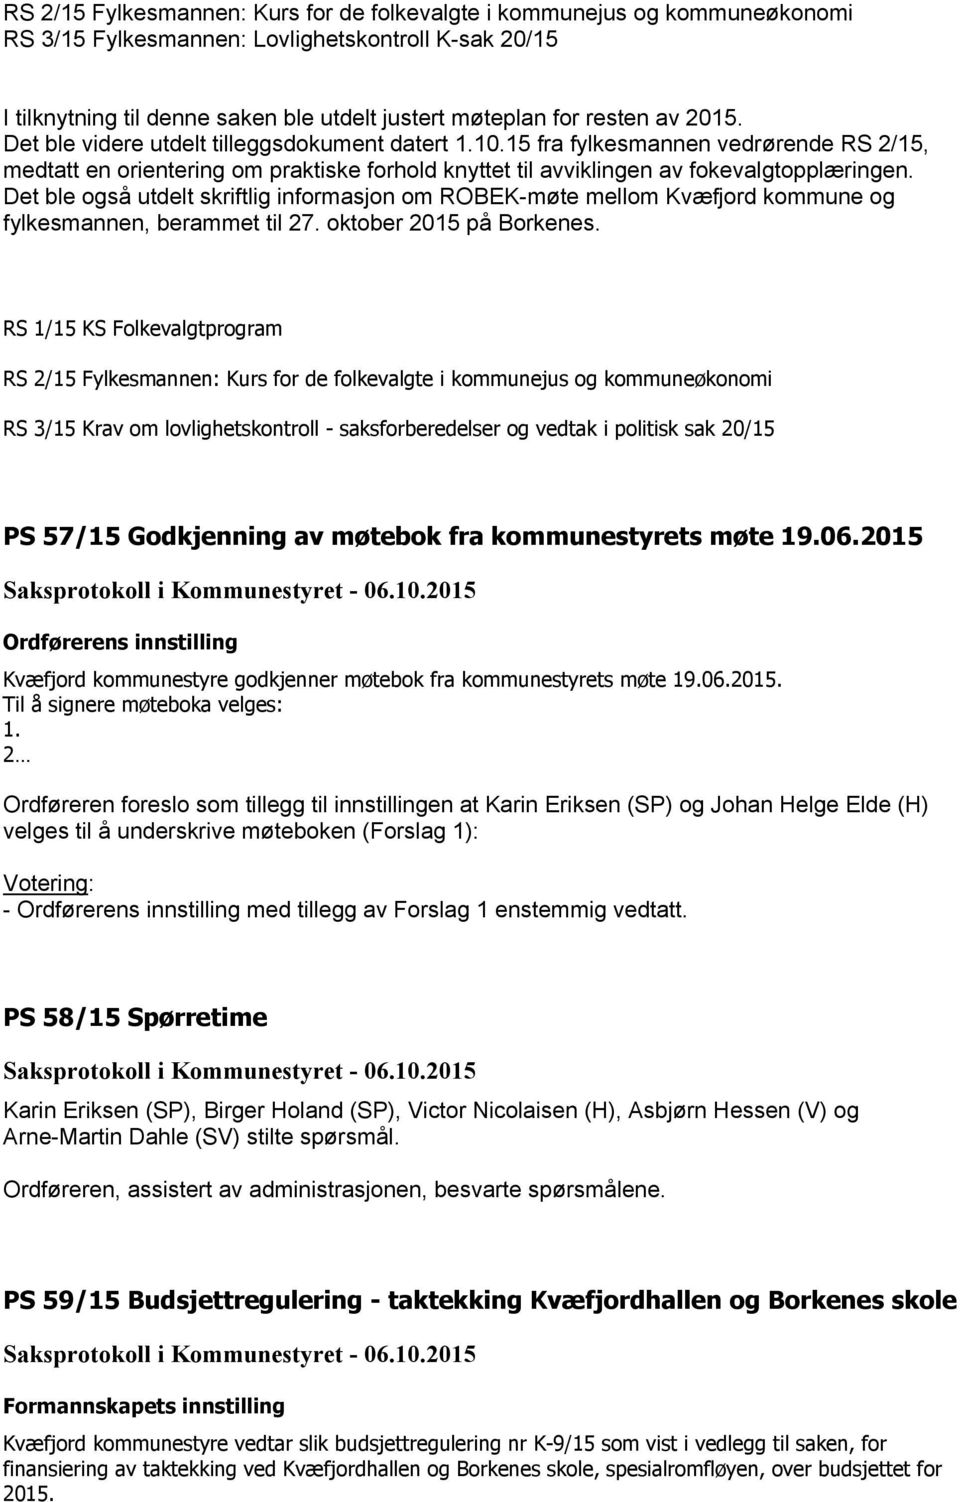 Det ble også utdelt skriftlig informasjon om ROBEK-møte mellom Kvæfjord kommune og fylkesmannen, berammet til 27. oktober 2015 på Borkenes.